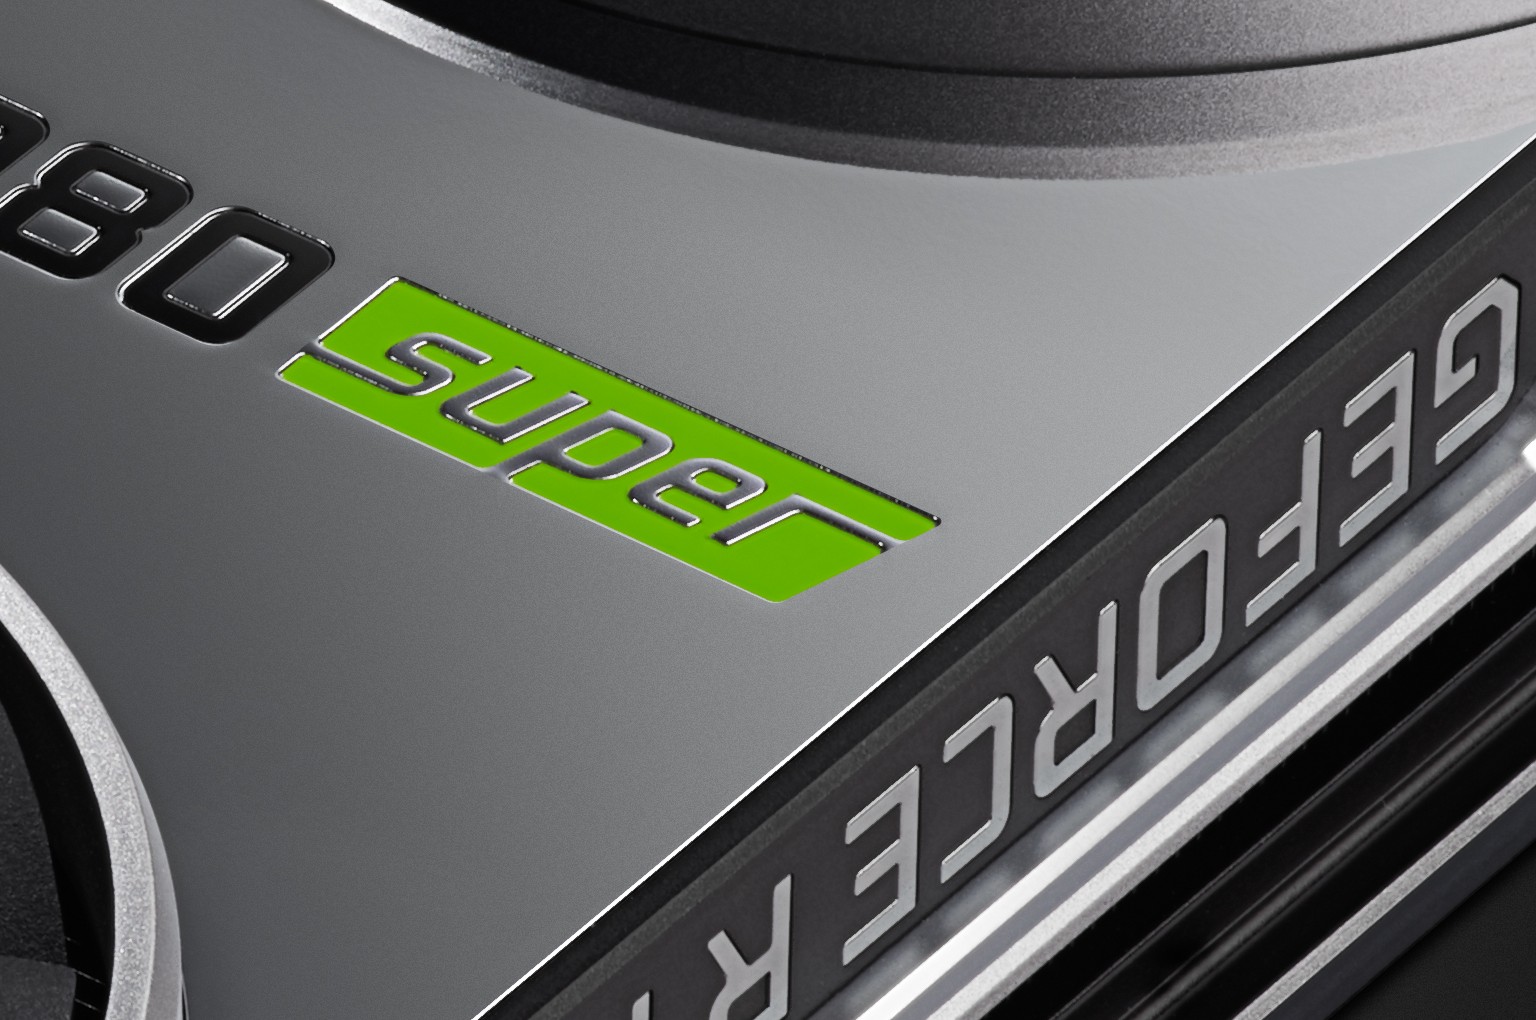 NVIDIA GeForce RTX 2080 Ti Specs